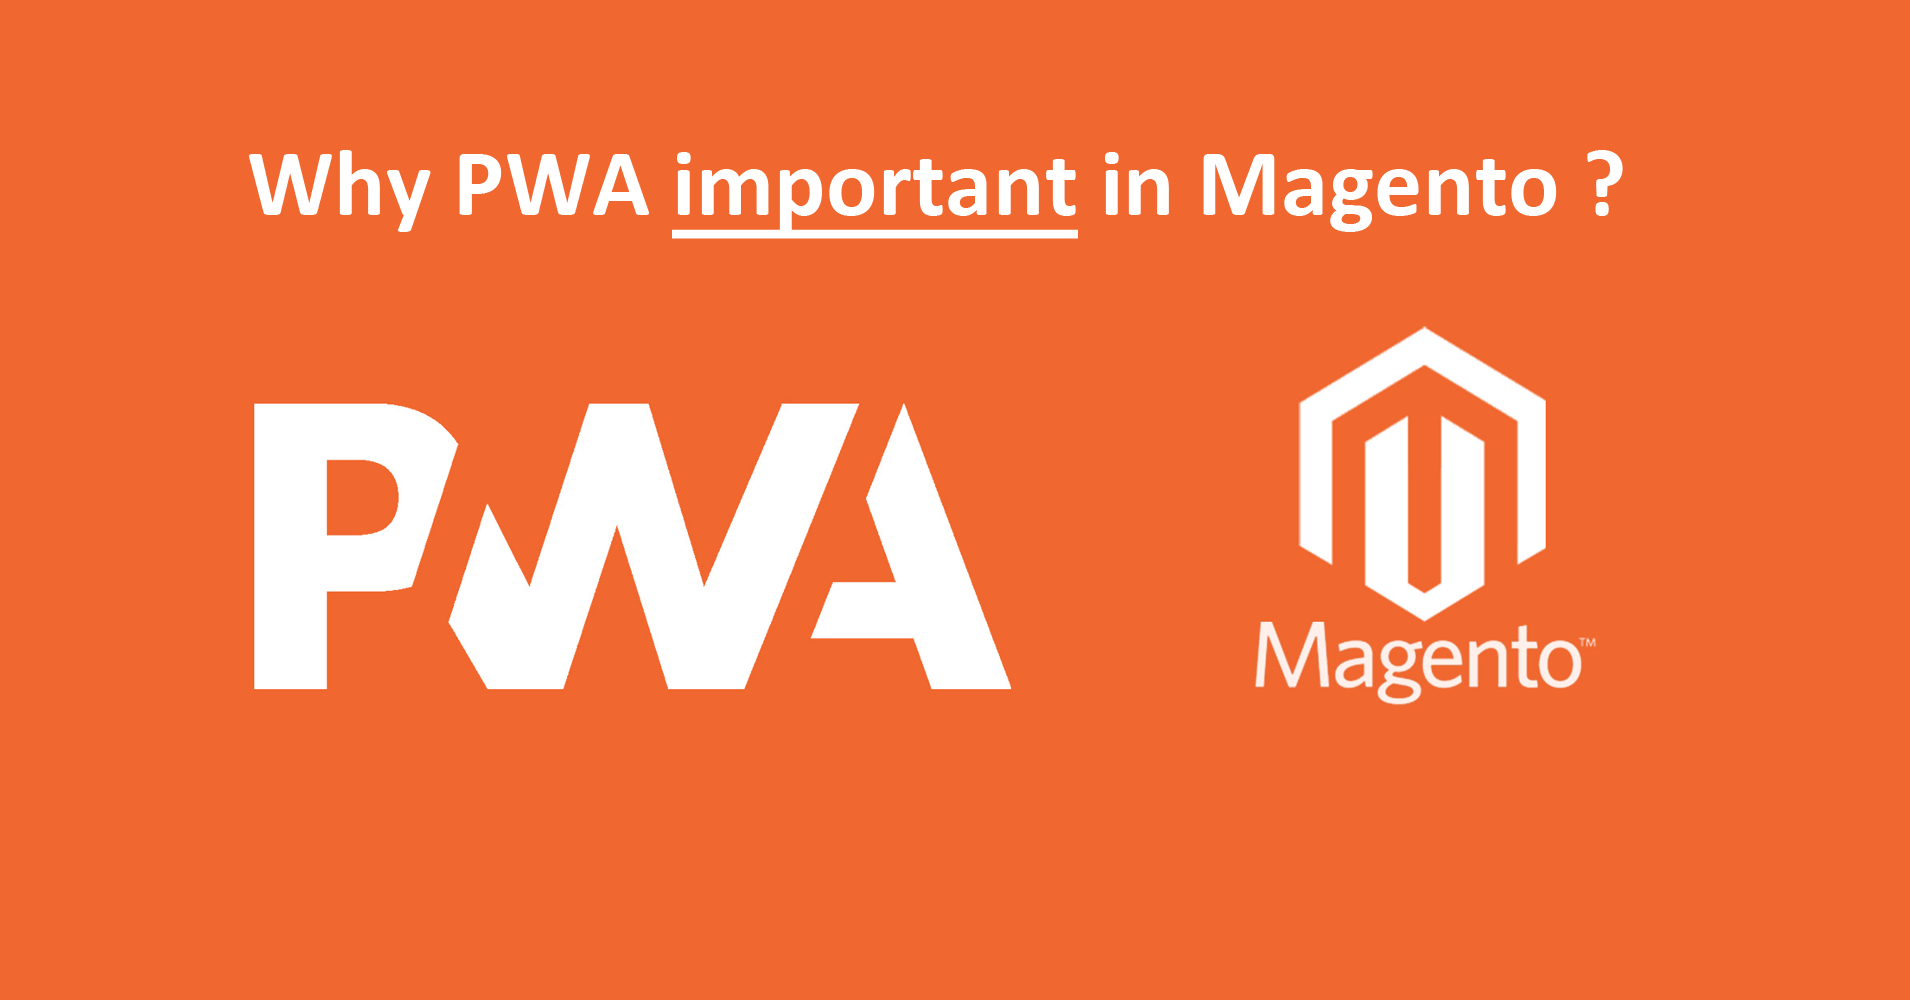 Magento and PWA